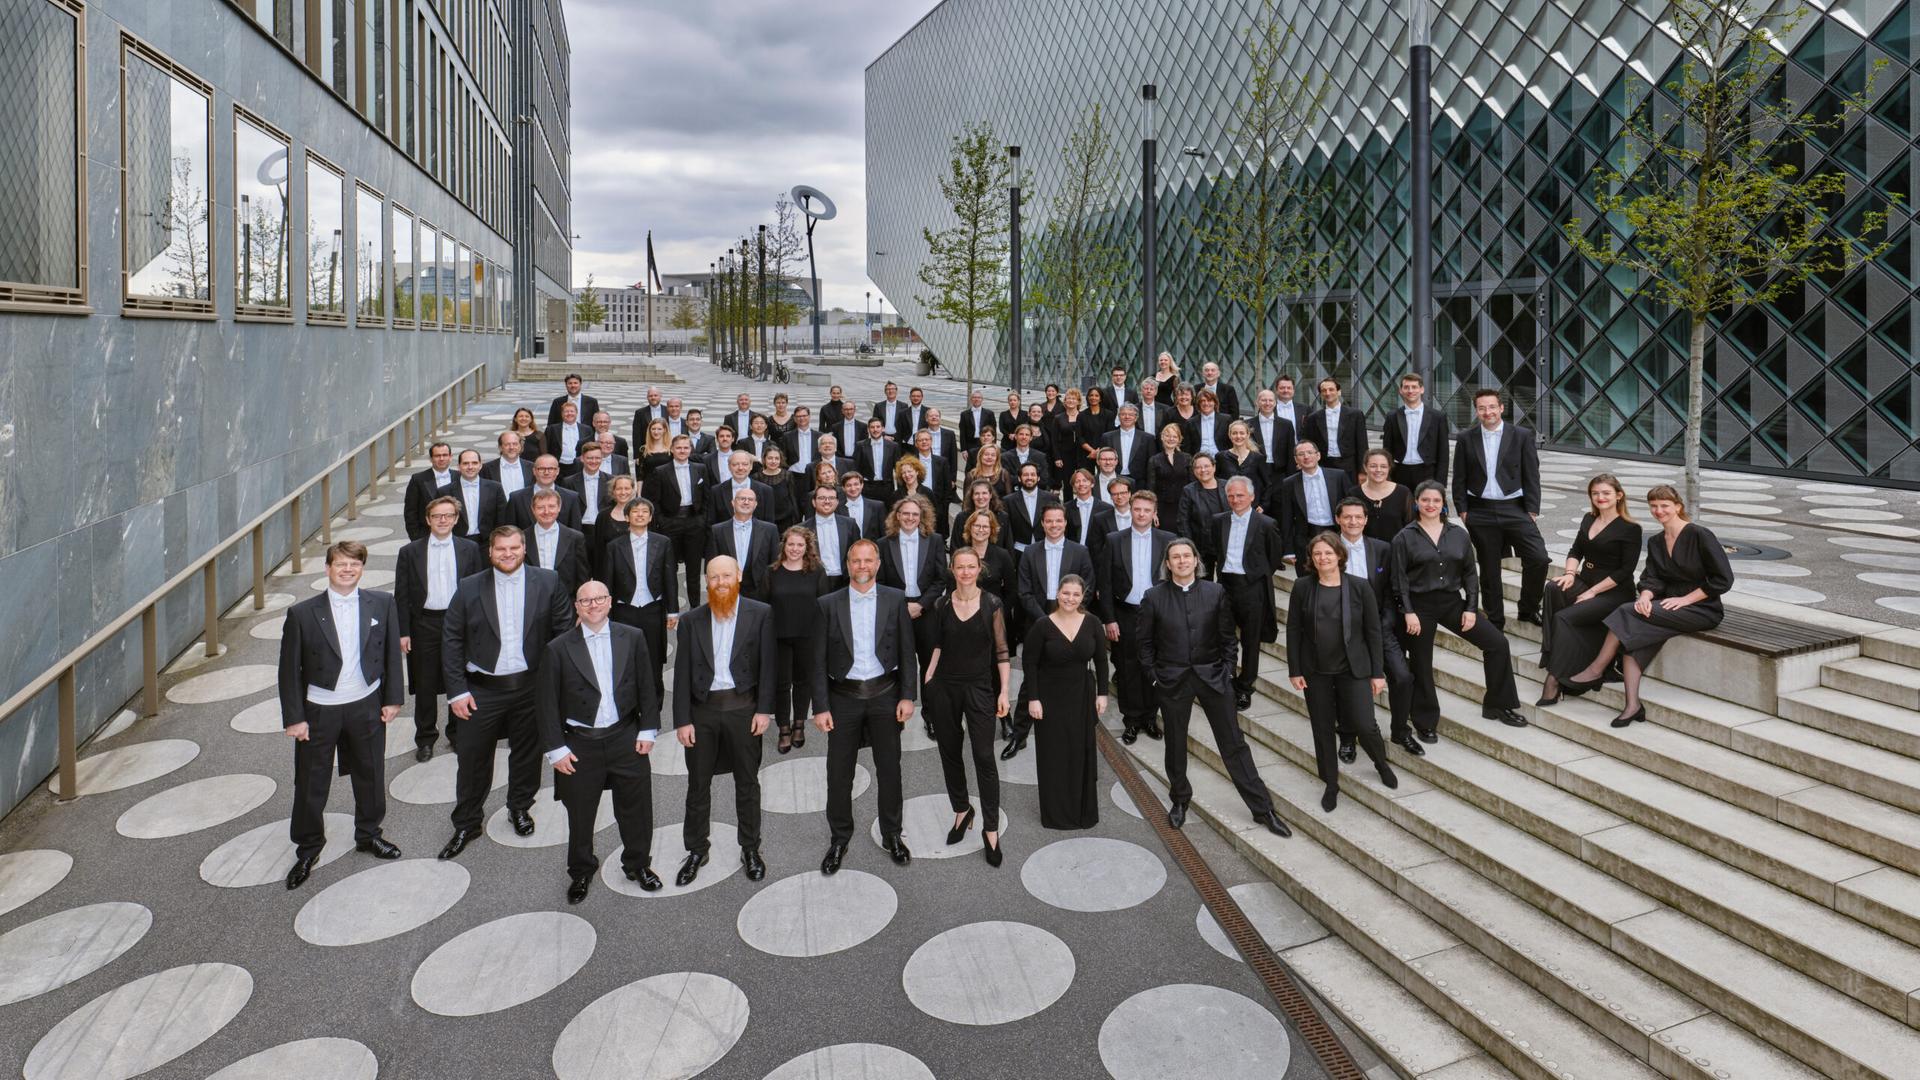 Das Orchester hat sich in einer architektonisch interessanten Ecke Berlins aufgestellt.